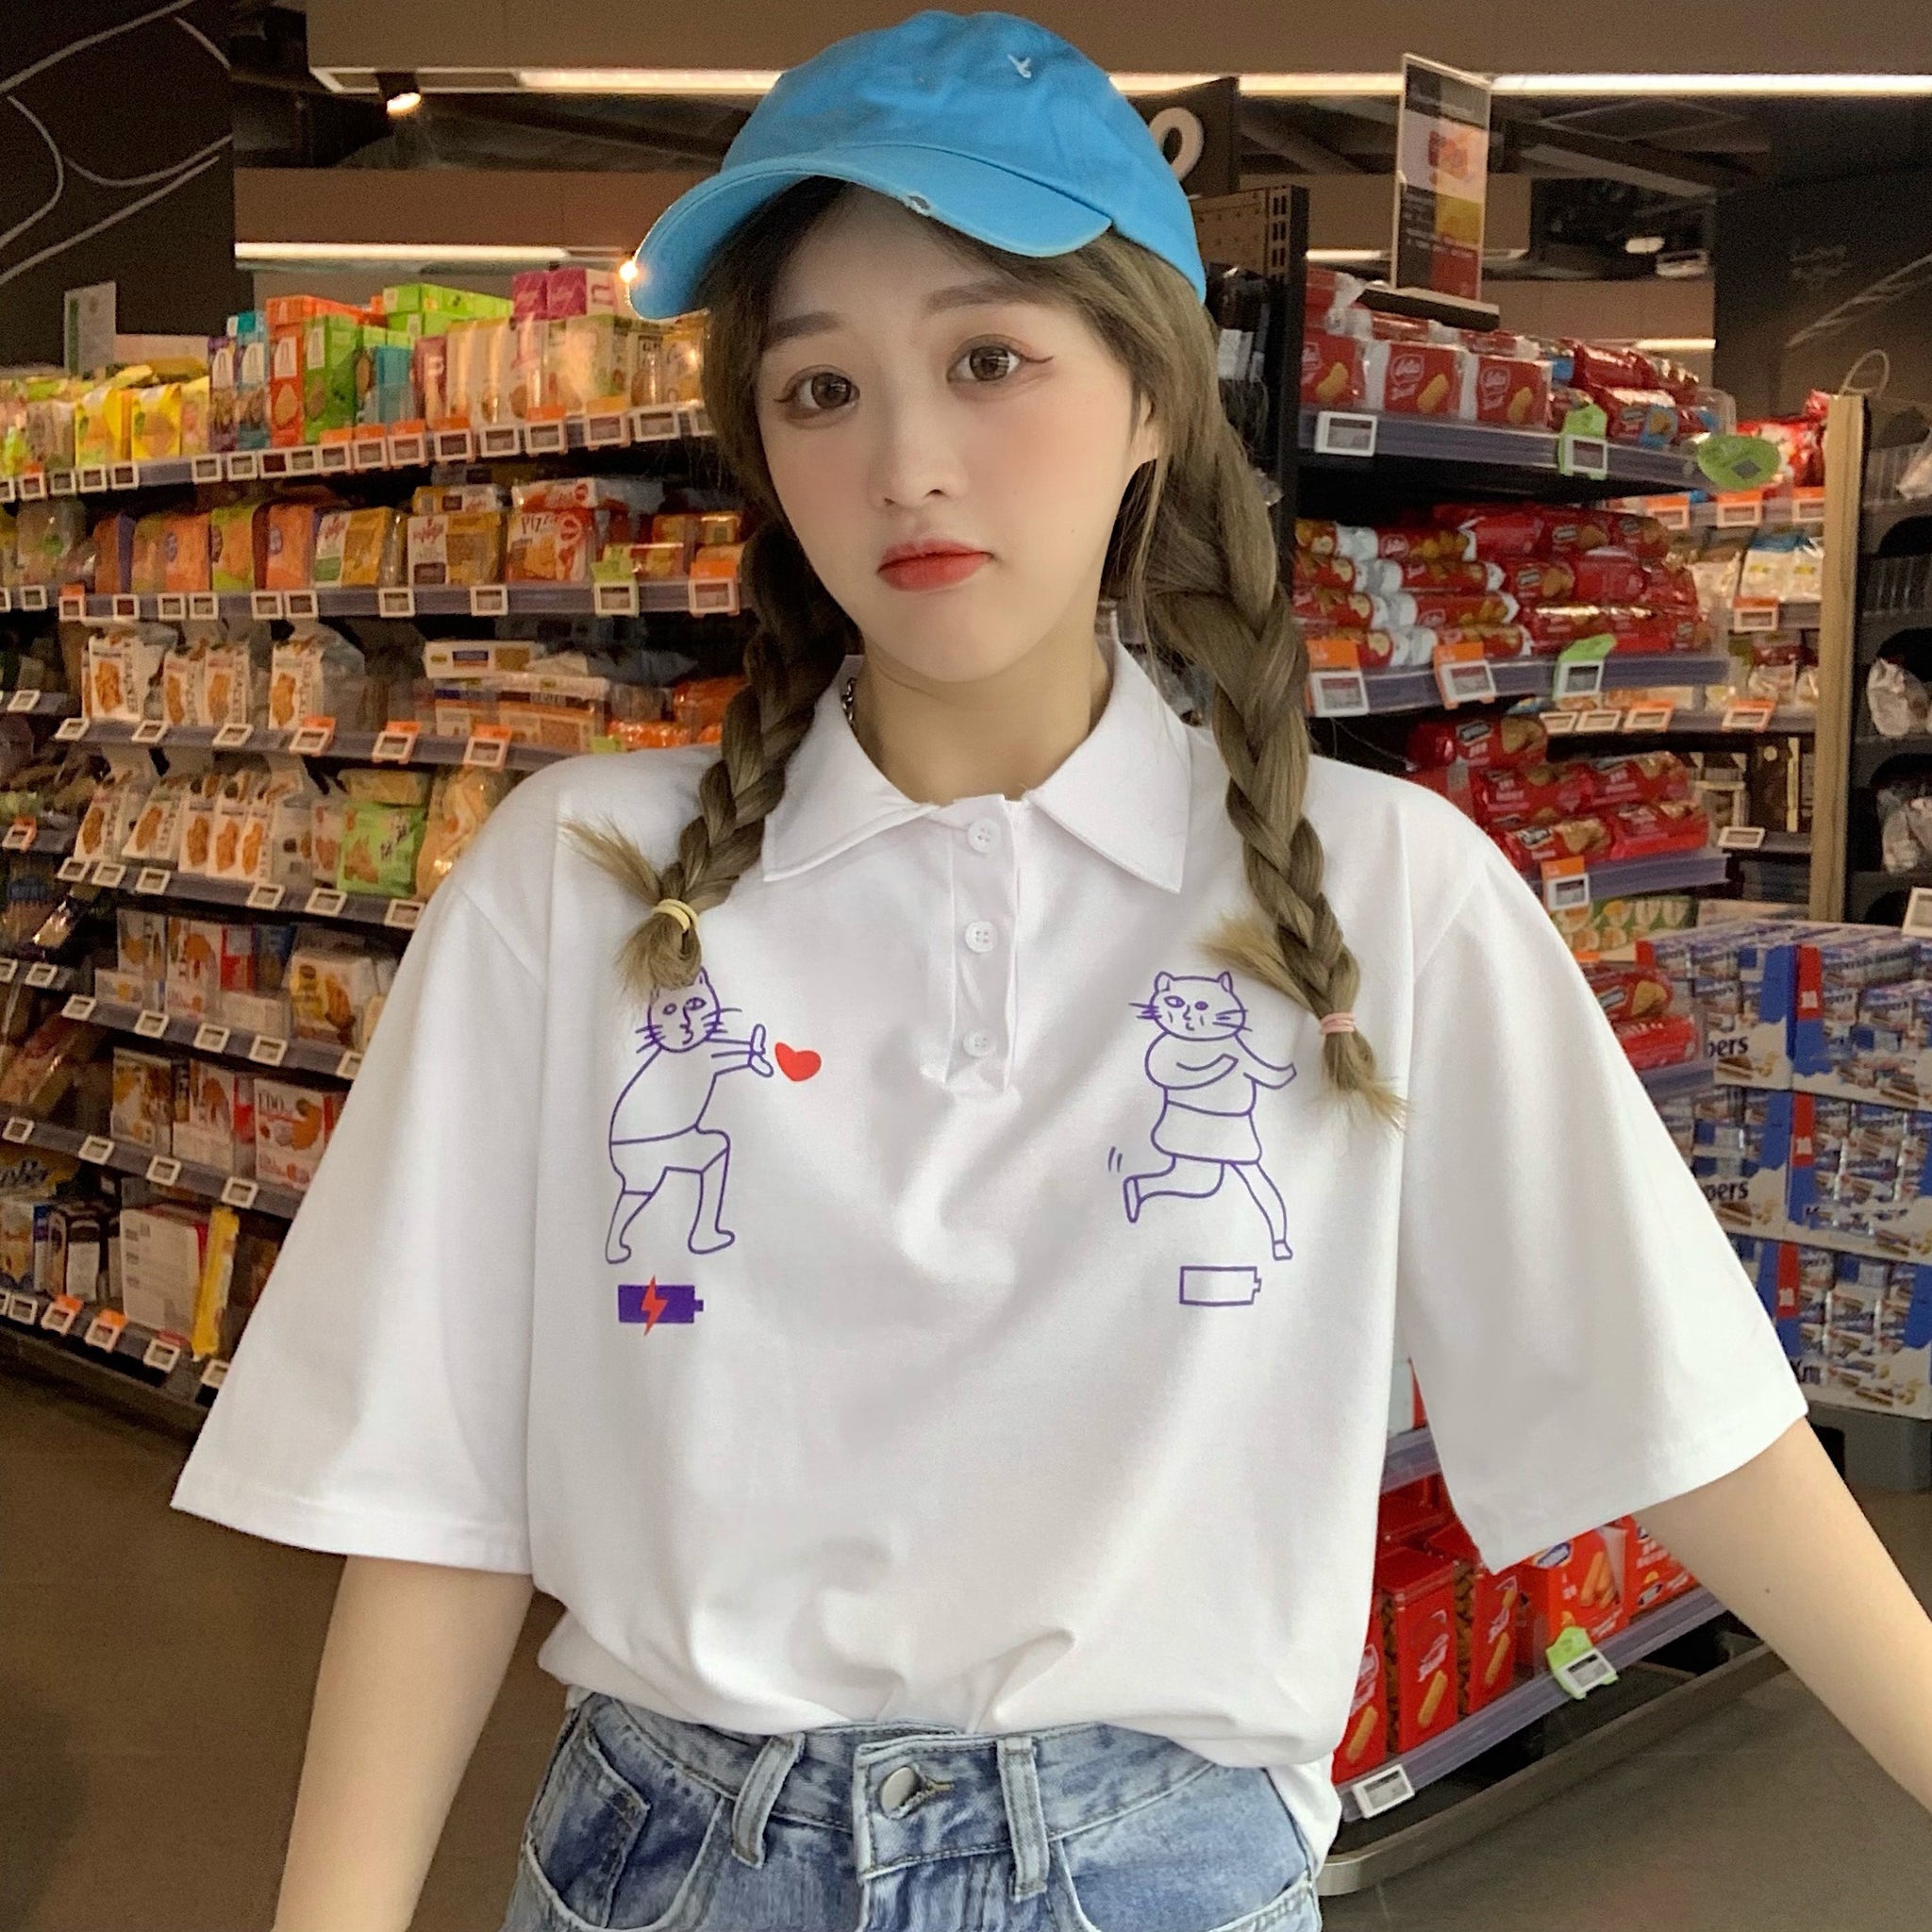 ユニーク猫プリント半袖ポロシャツ 春夏 韓国ファッション